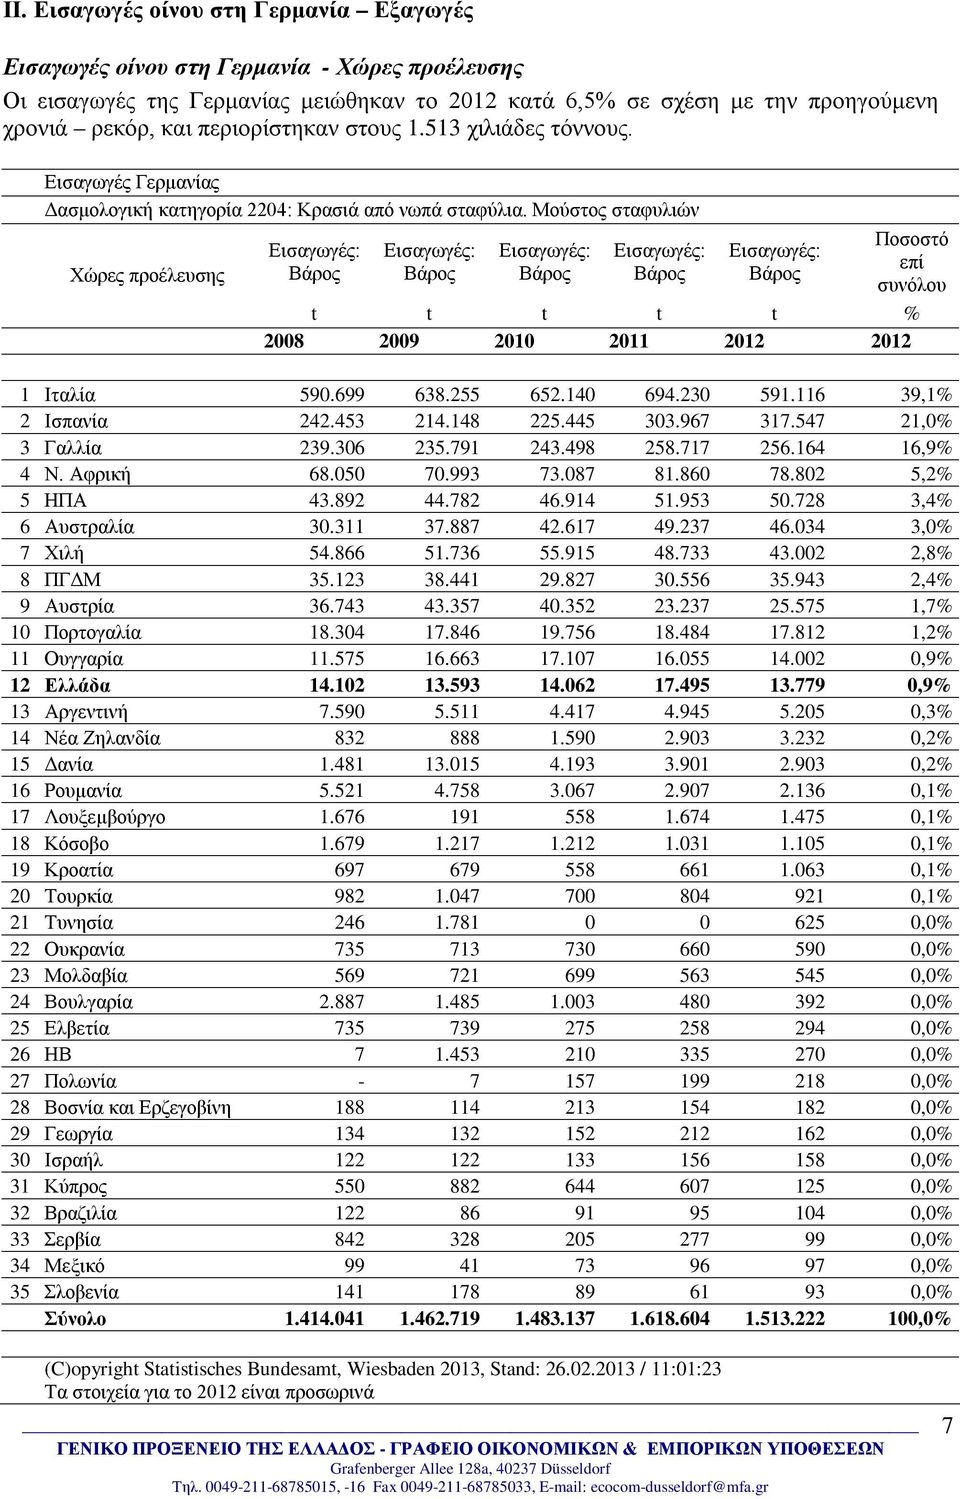 Μούστος σταφυλιών Χώρες προέλευσης Βάρος Βάρος Βάρος Βάρος Βάρος Ποσοστό επί συνόλου t t t t t % 2008 2009 2010 2011 2012 2012 1 Ιταλία 590.699 638.255 652.140 694.230 591.116 39,1% 2 Ισπανία 242.